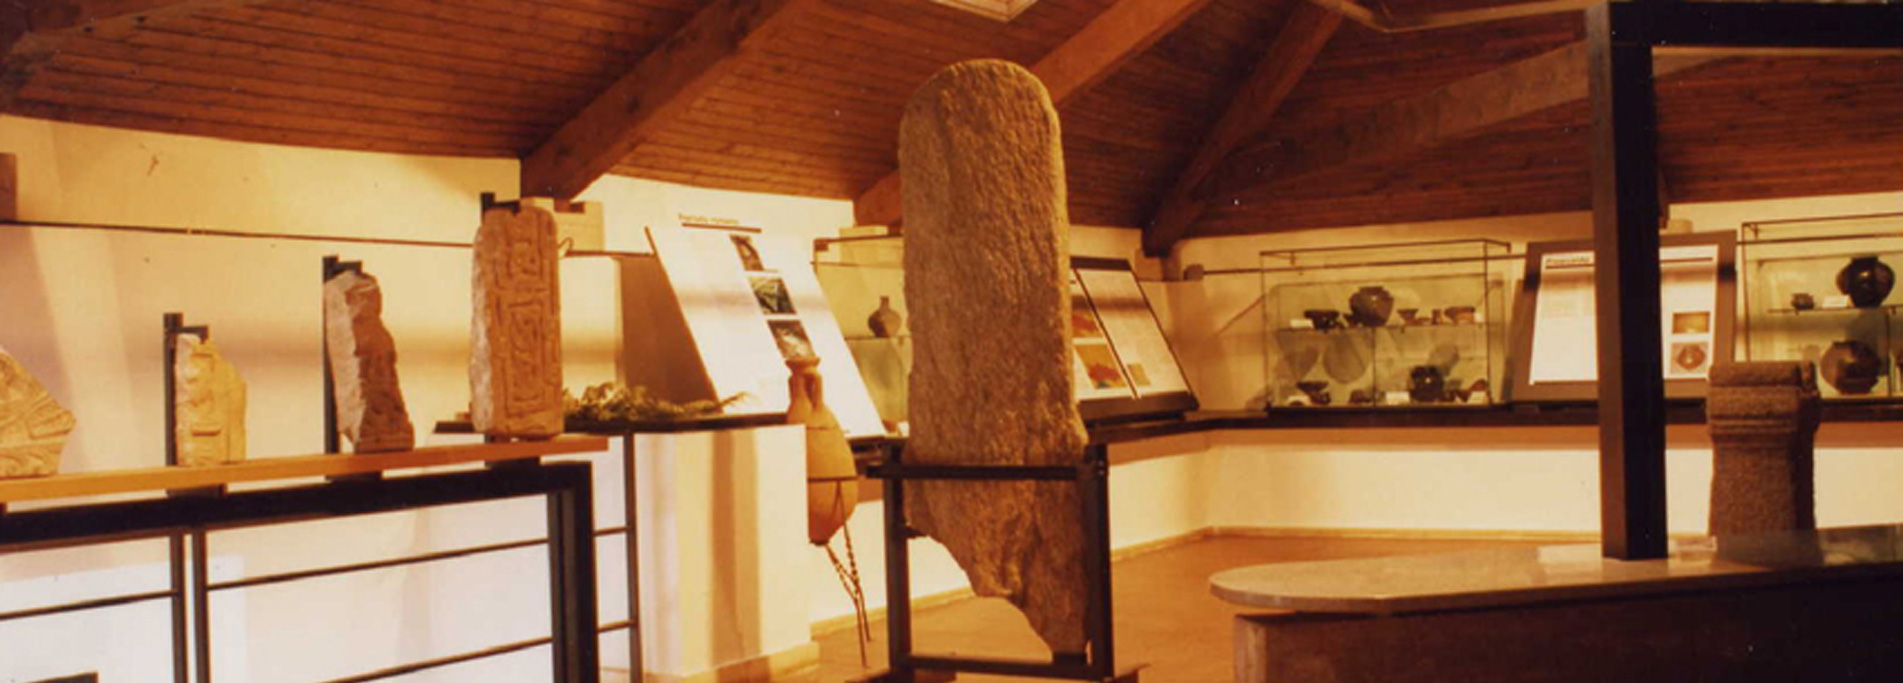 Civico Museo Archeologico di Sesto Calende